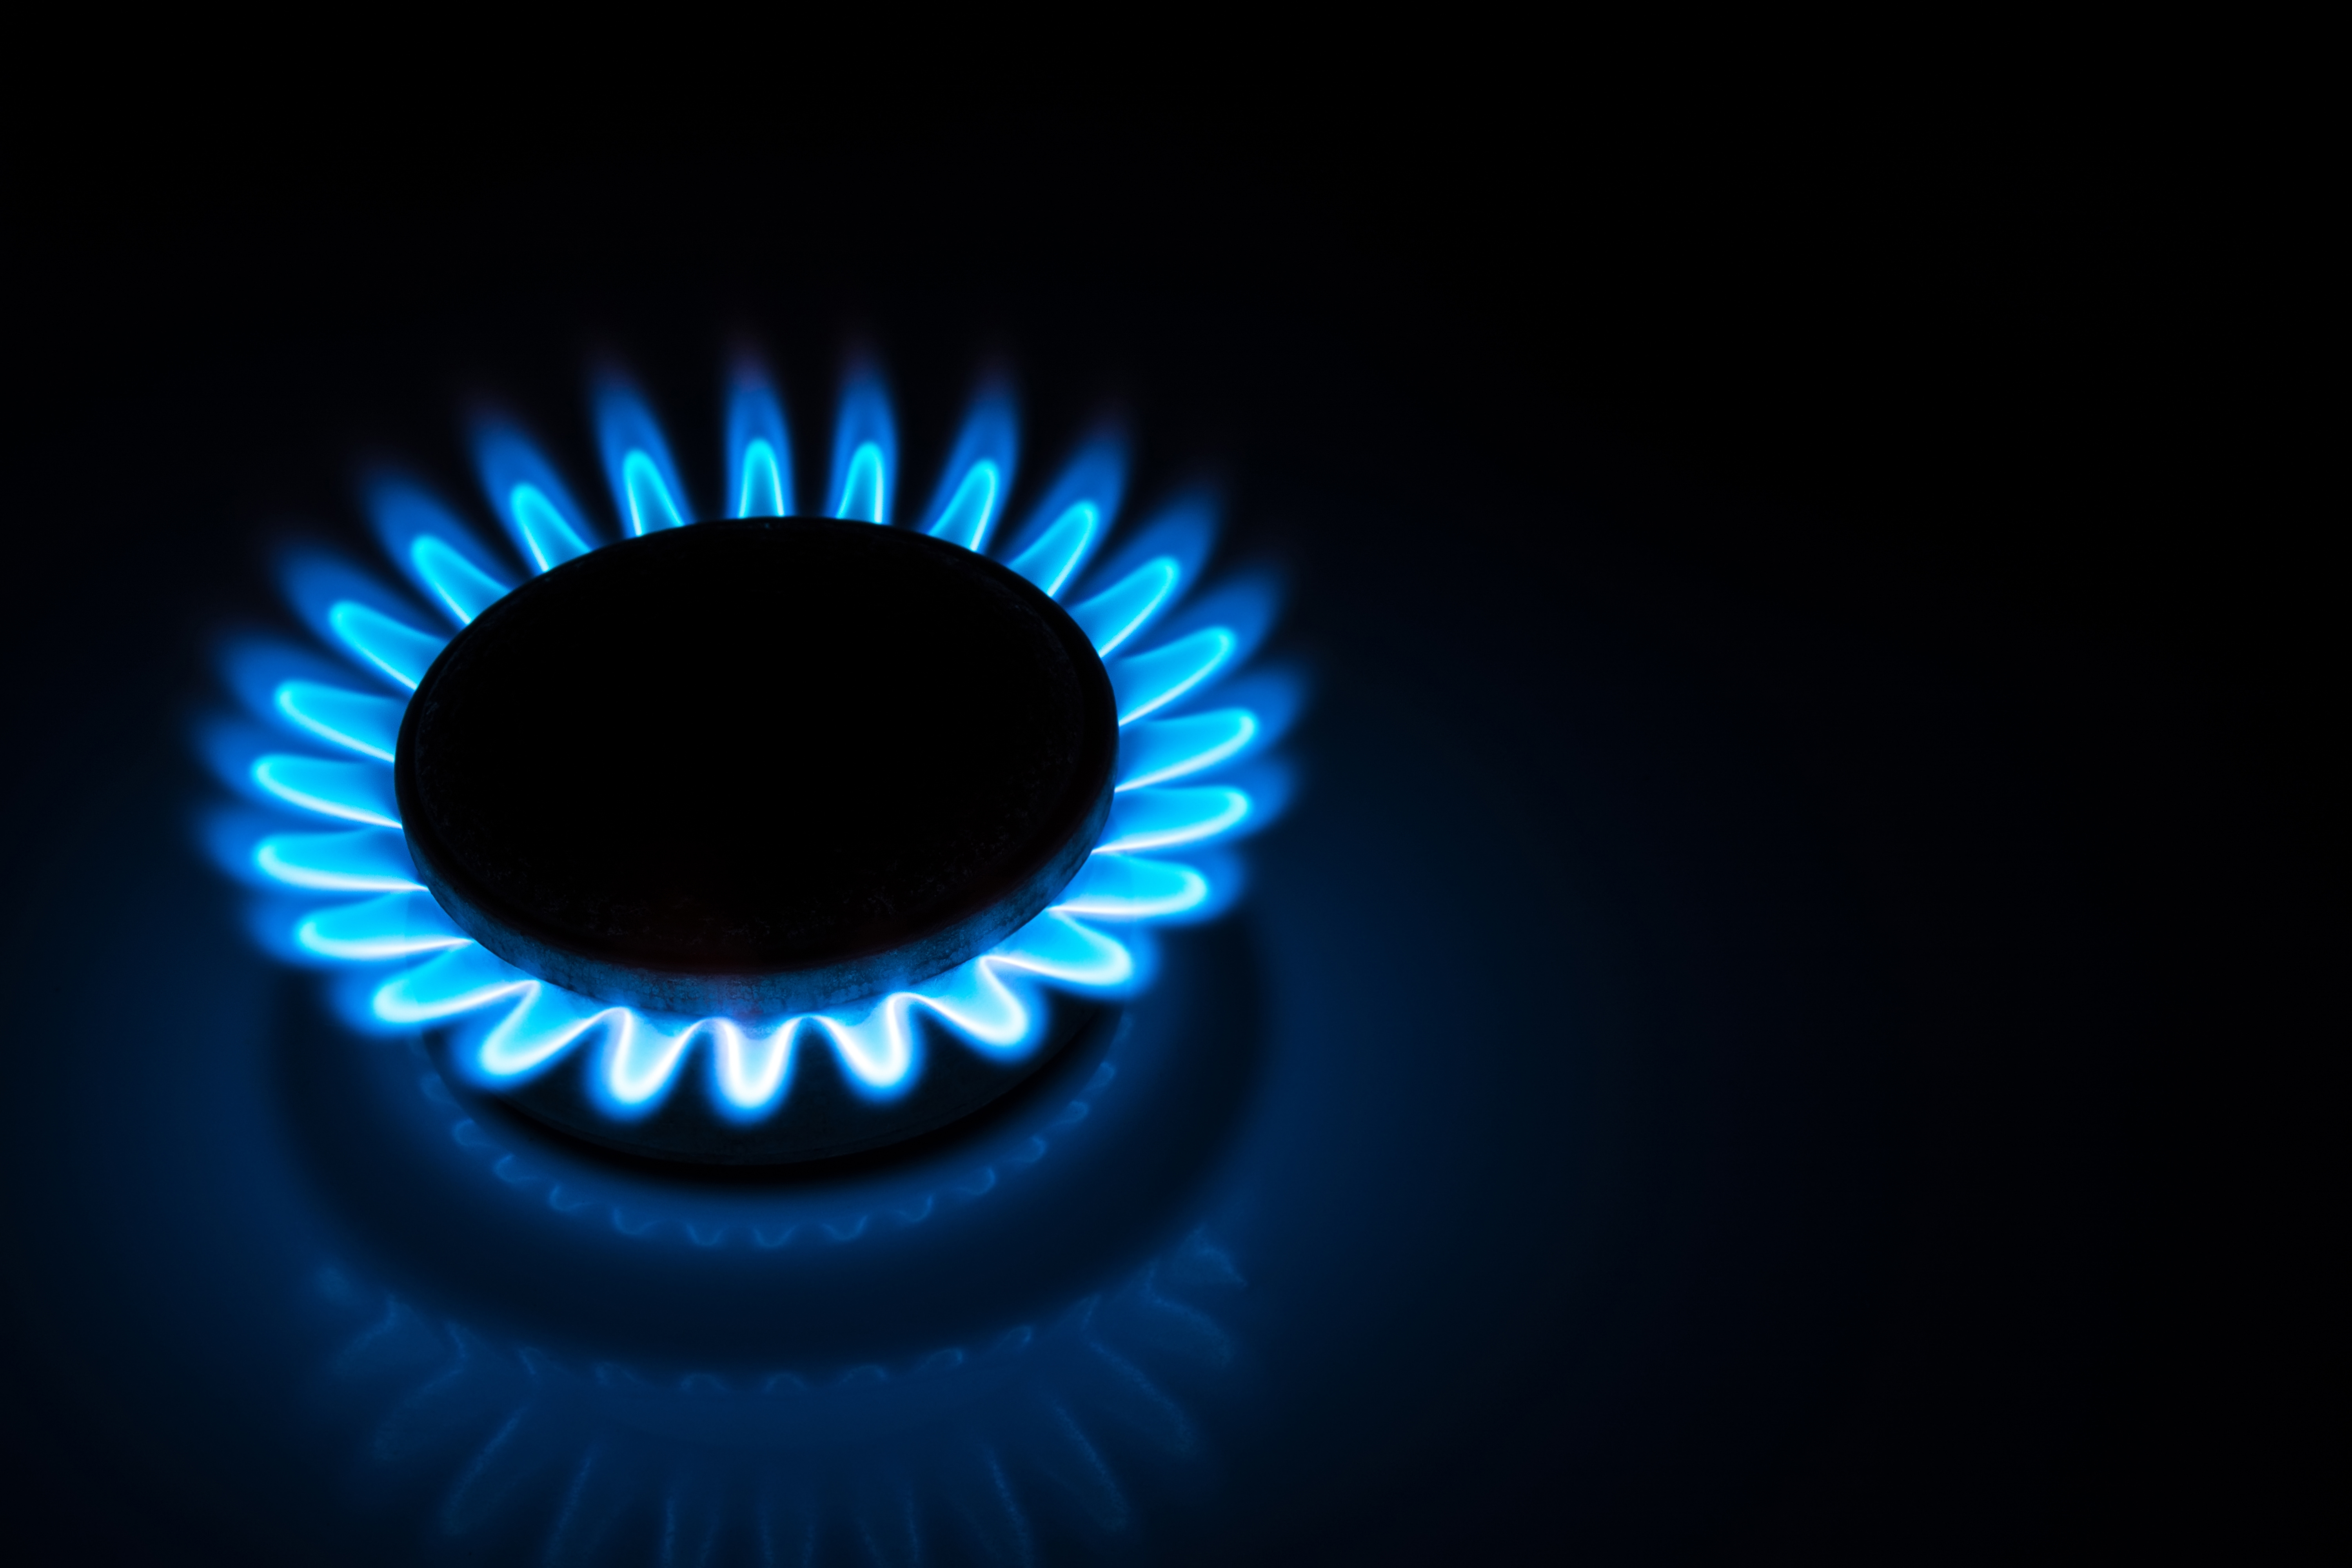 A blue gas flame.